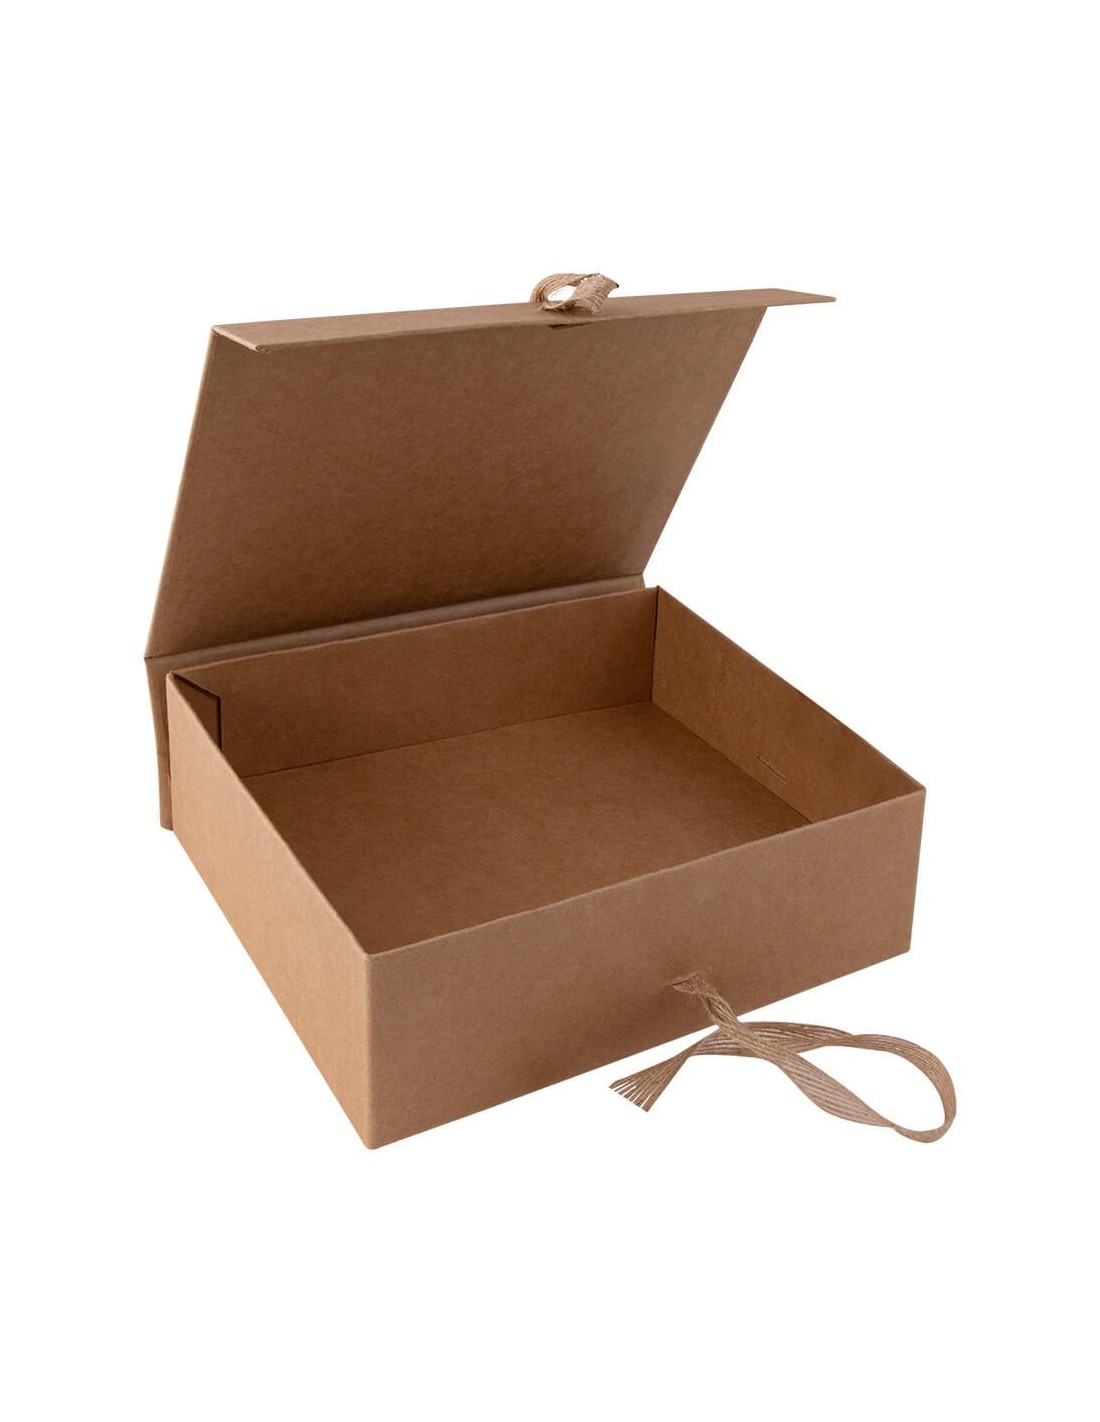 Caja de regalo  Cajas personalizadas, Regalos, Hacer cajas de regalo